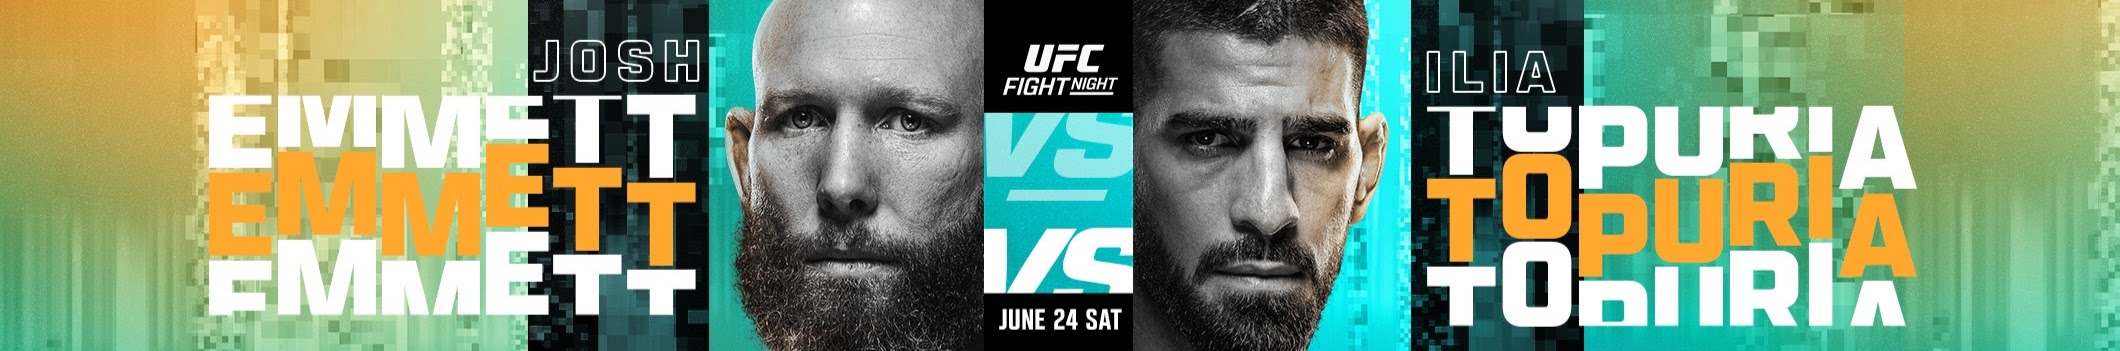 UFC on ABC 5 - Jacksonville - Poster et affiche